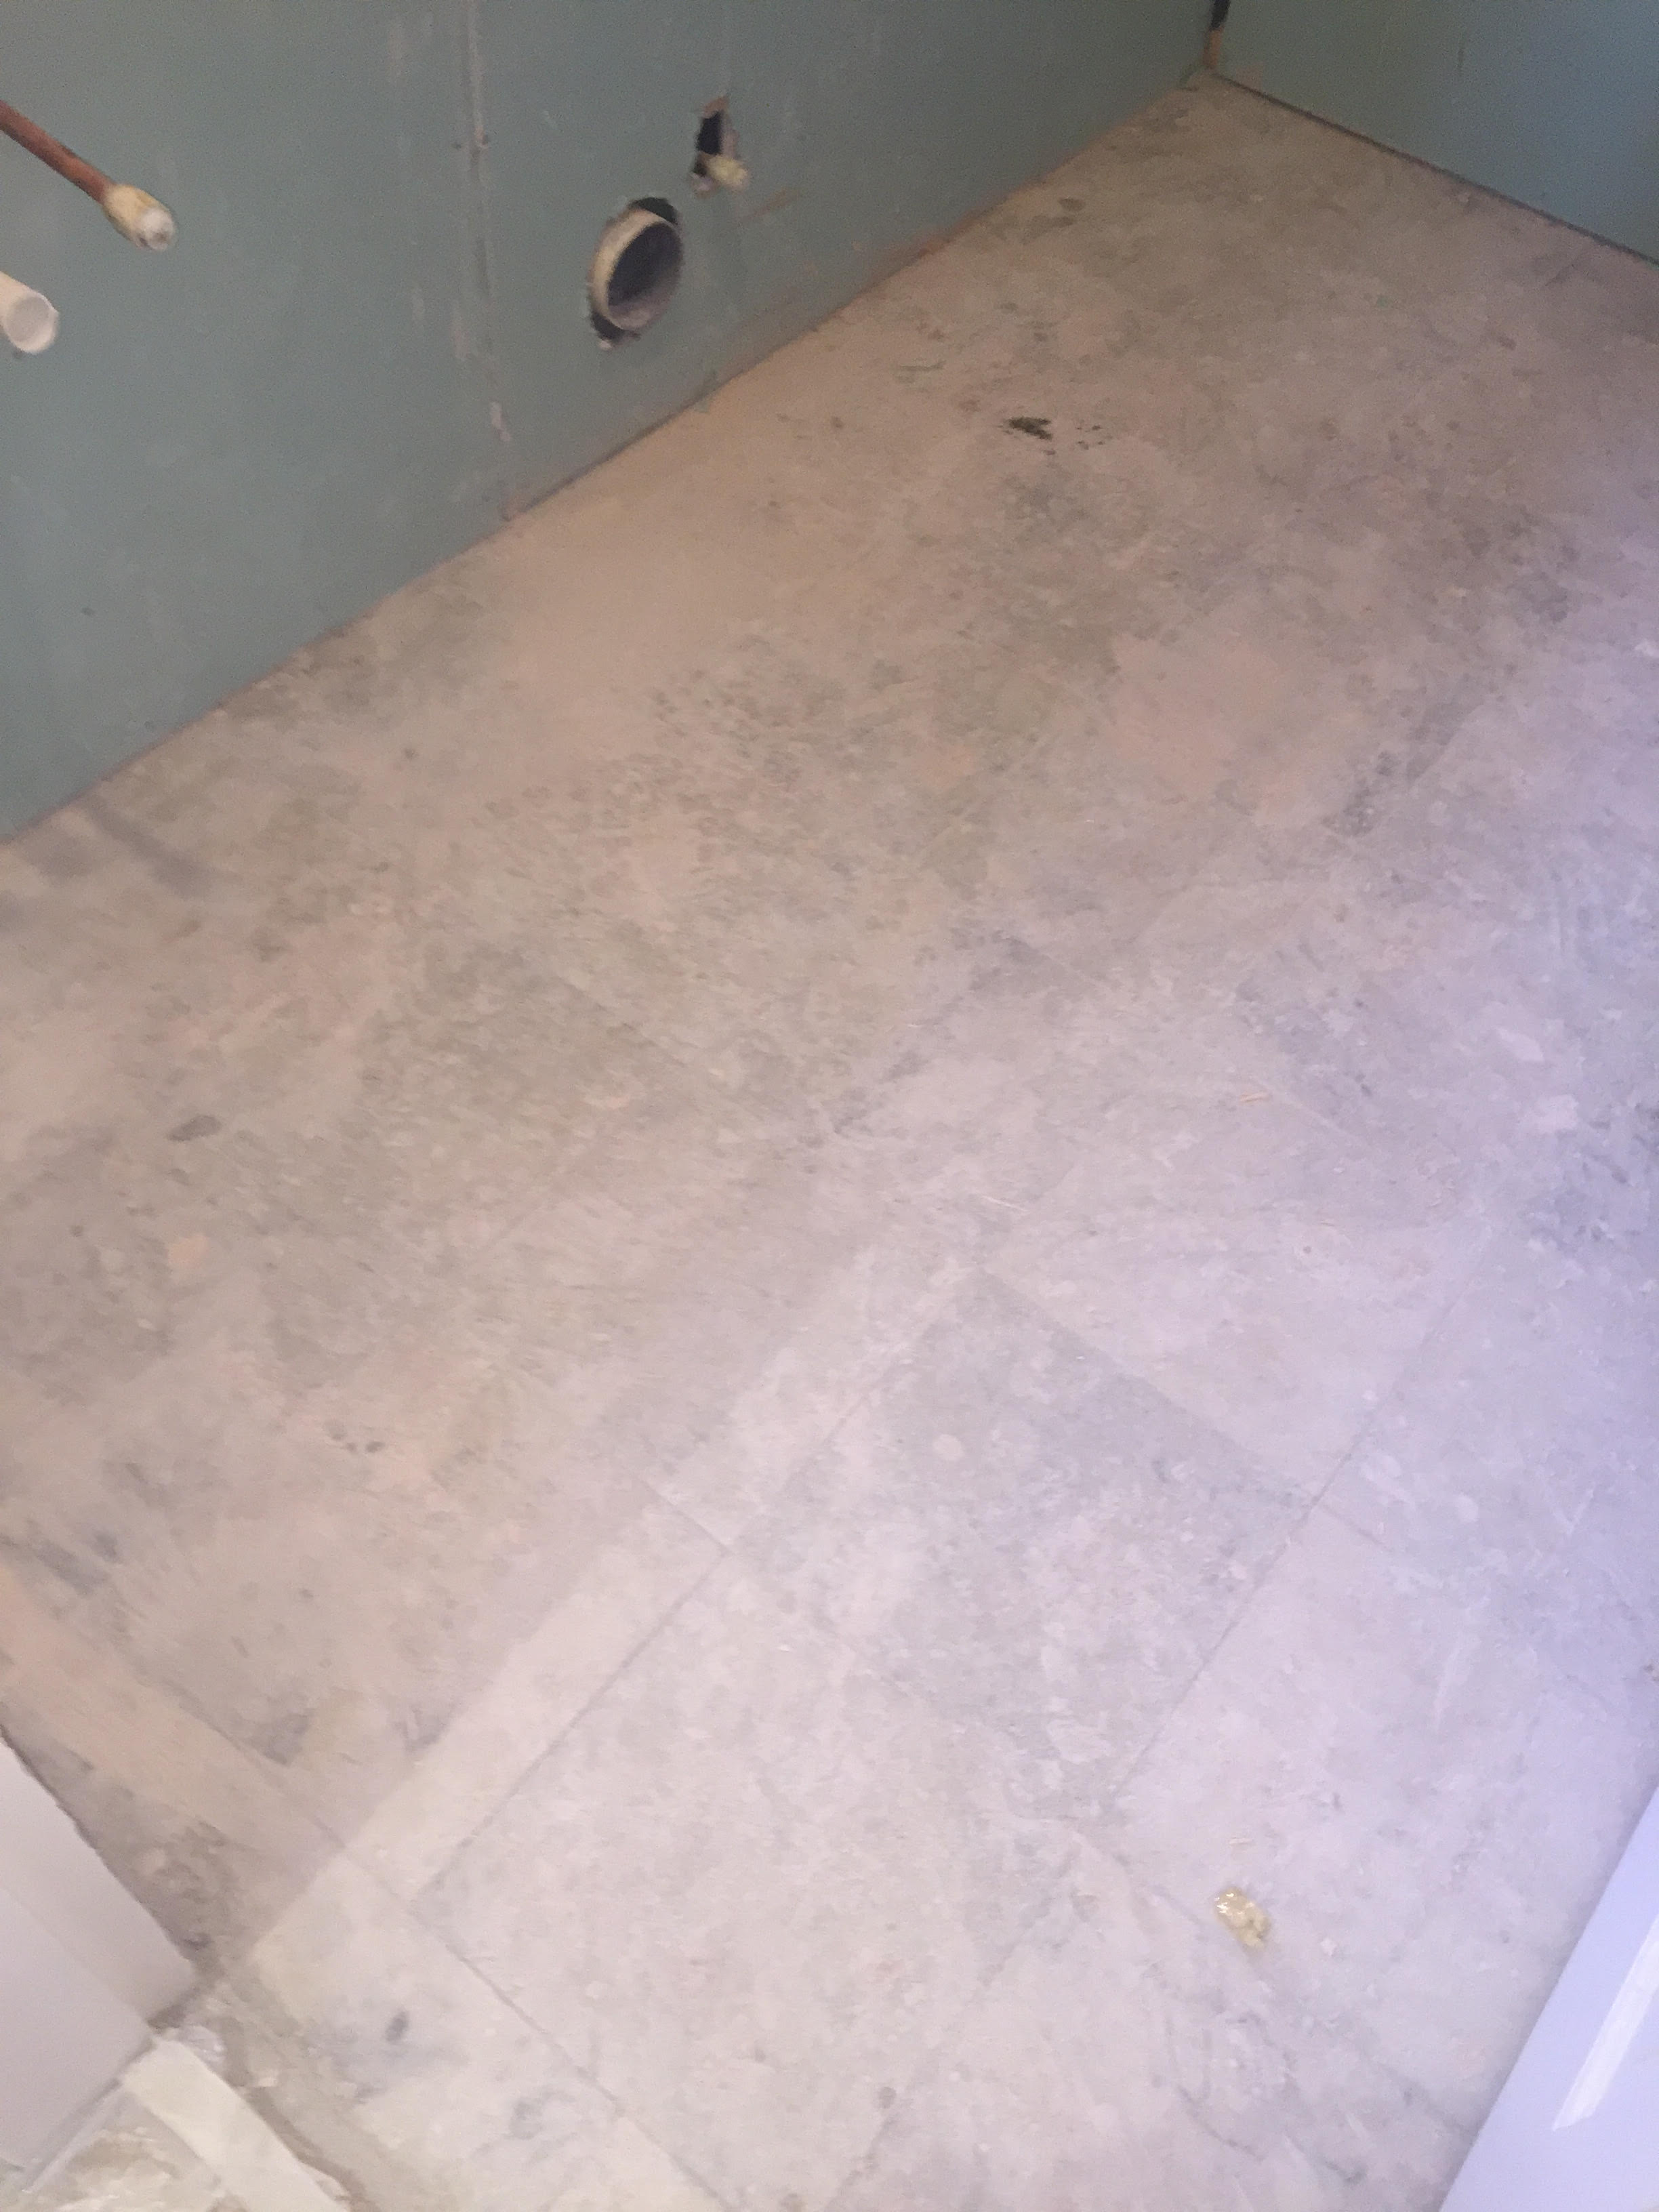 Marble Tiled Bathroom Floor Before Restoration Walkerburn